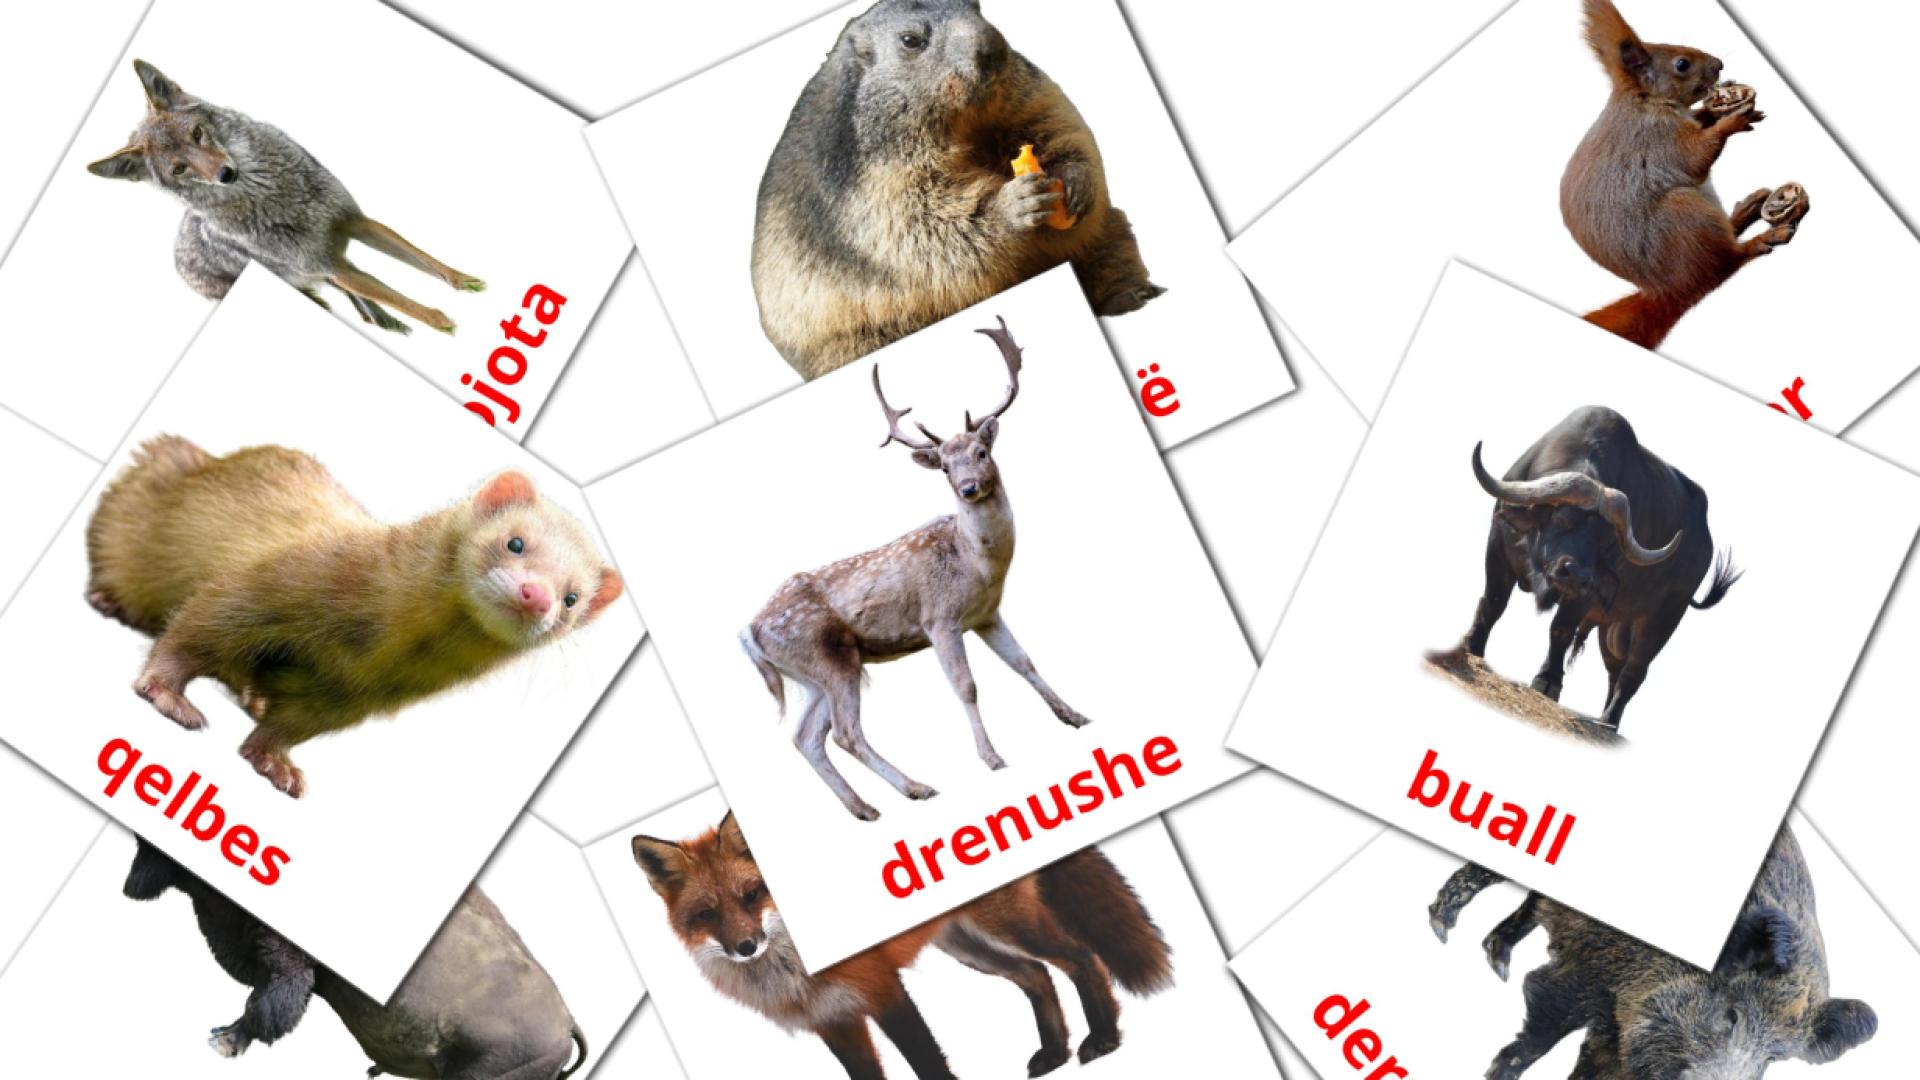 Animales del Bosque - tarjetas de vocabulario en albanés